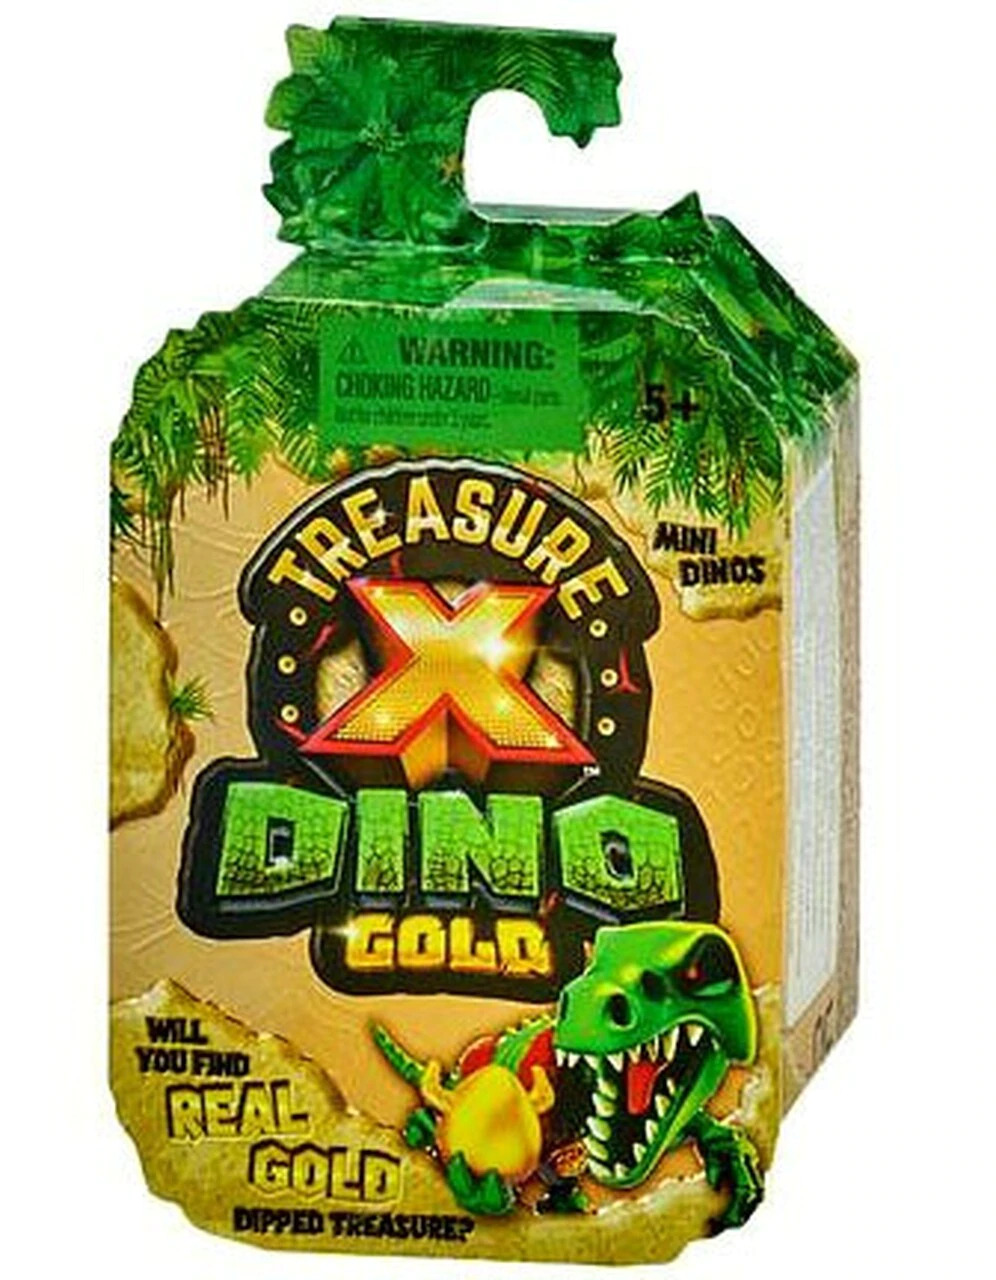 Treasure x gold. Treasure x Dino Gold. Treasure x игровой набор Dino Gold с мини динозаврами 41637. Treasure x Dino Gold набор. Treasure x Treasure x Dino Gold.